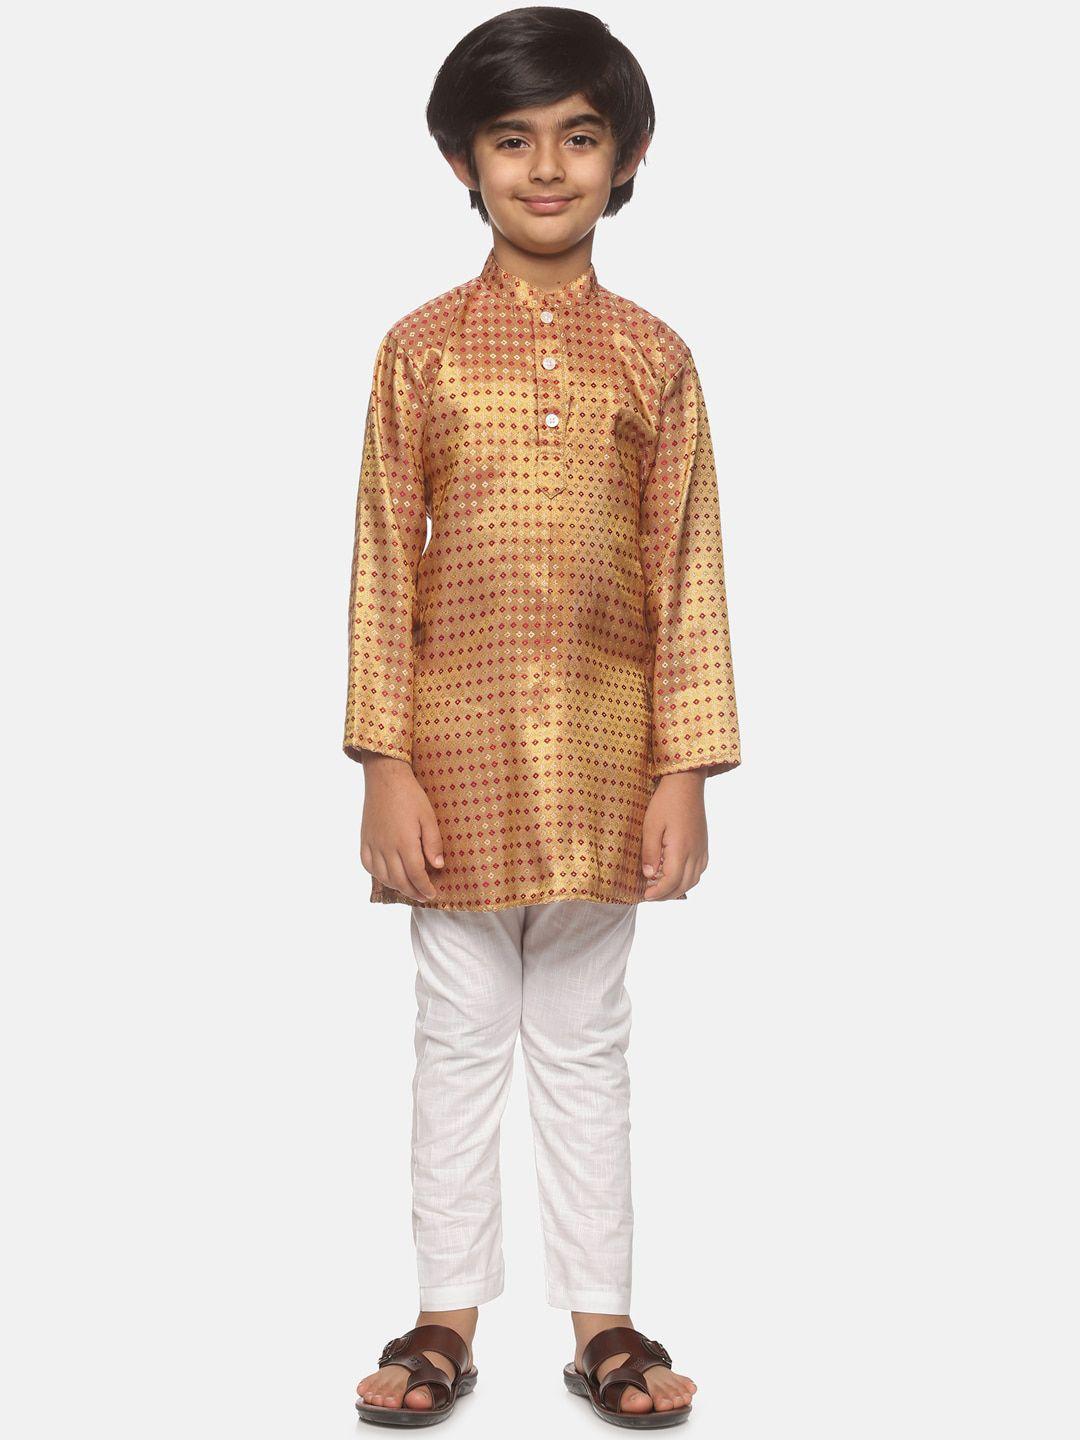 sethukrishna-boys-gold-toned-&-red-printed-kurta-with-pyjamas